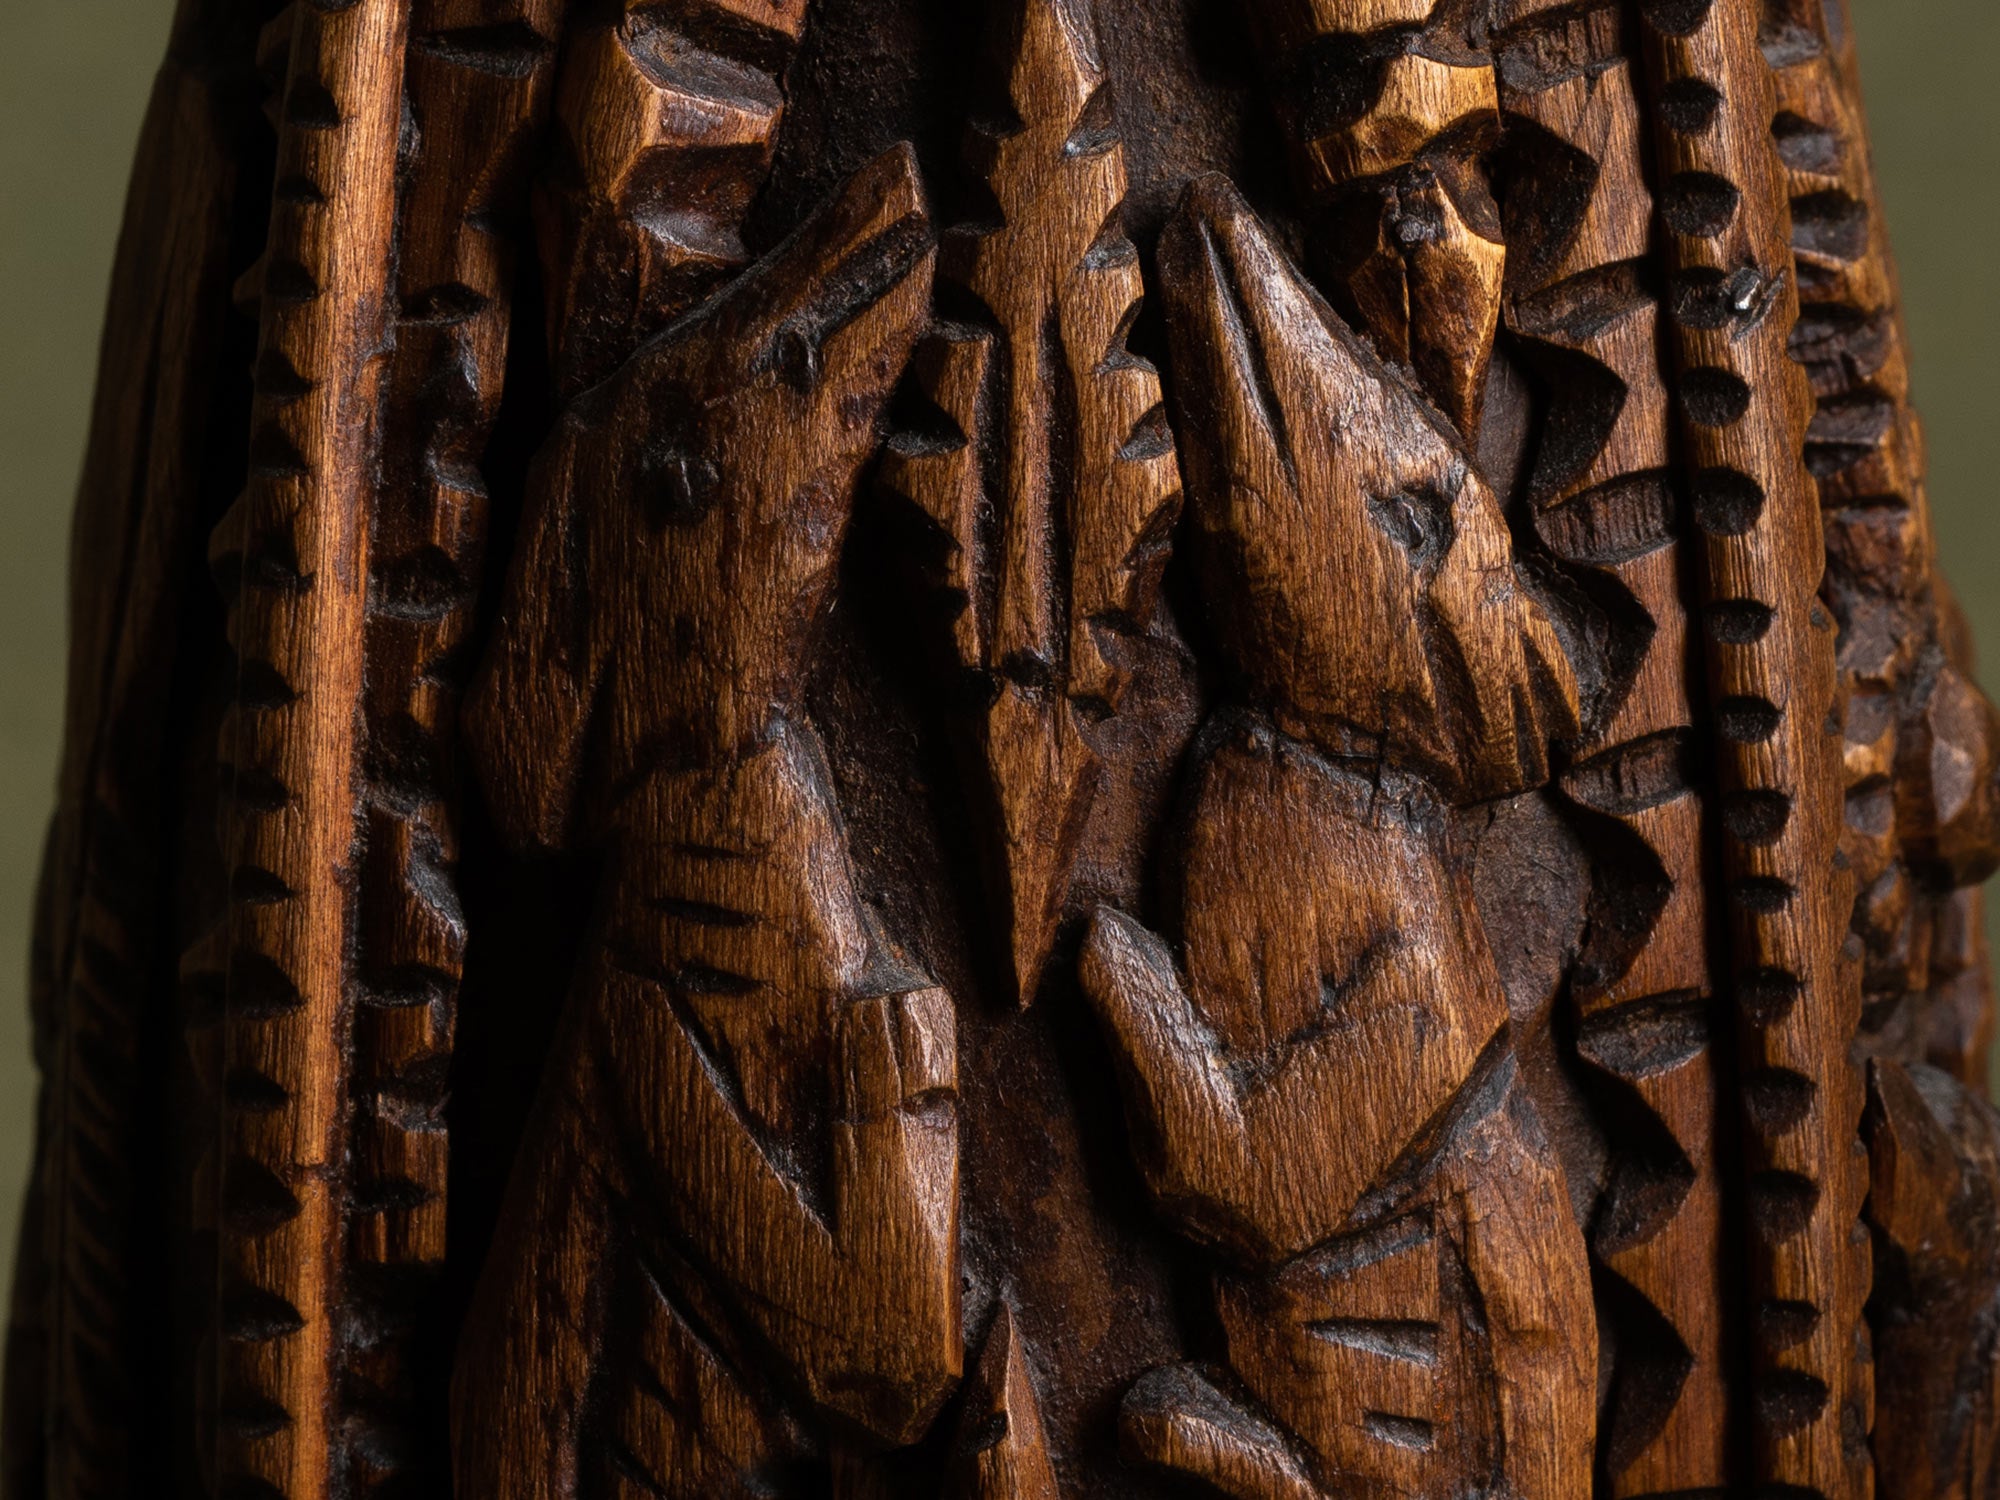 Bouteille de mariage en bois sculpté, art paysan, France (Fin du XIXe / début du XX siècle)..Unique Old wooden carved wedding bottle, Peasant art, France (Late 19th / early 20th century)